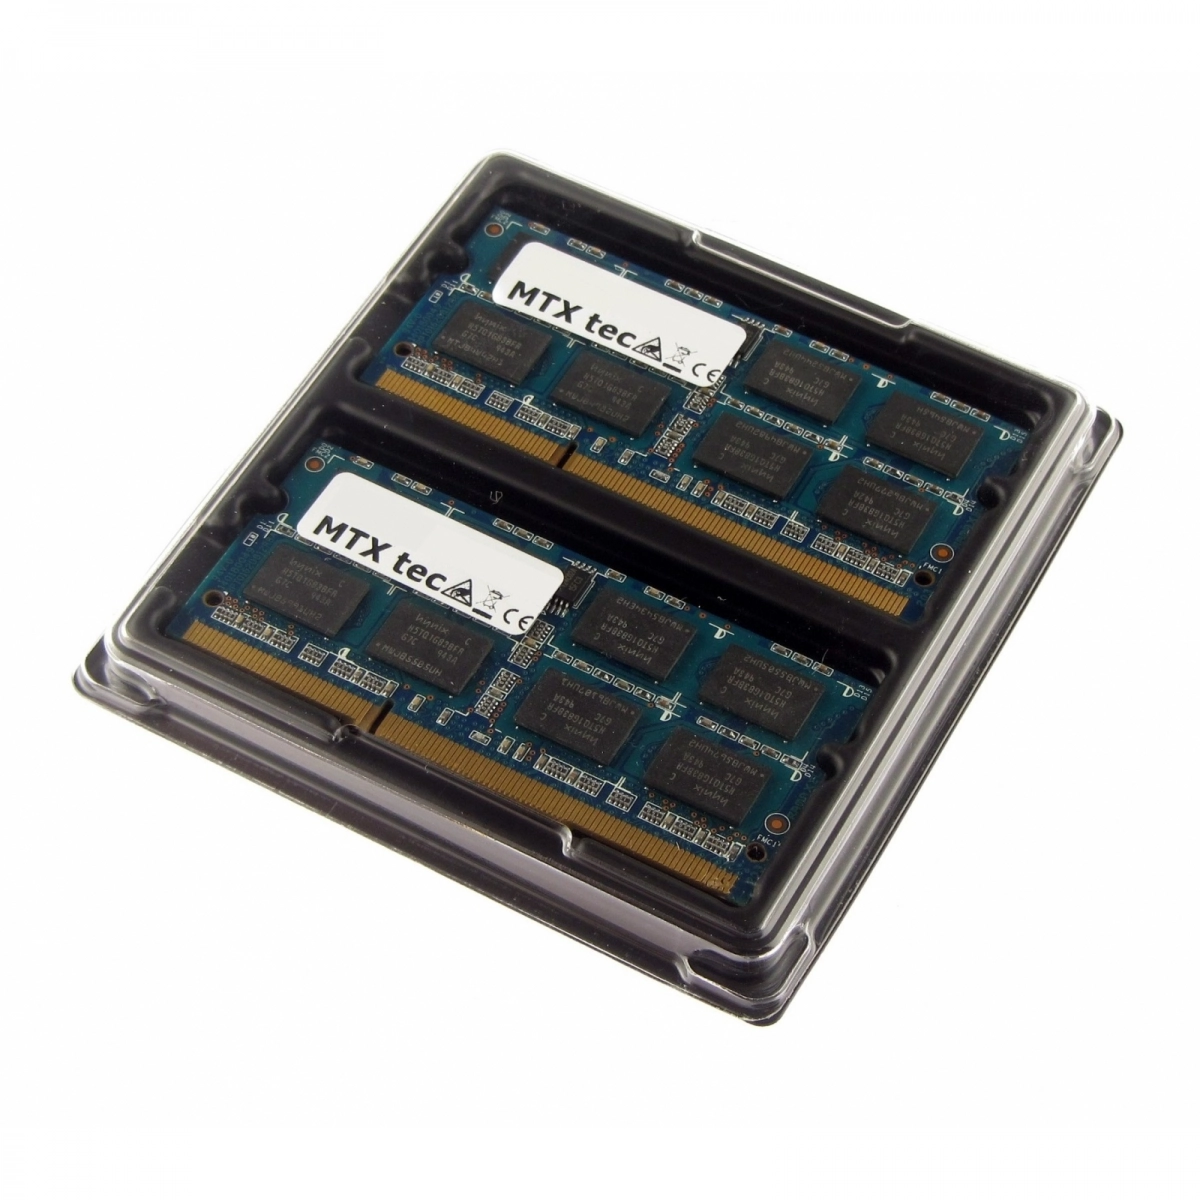 MTXtec 8GB Kit 2x 4GB DDR3L 1600MHz SODIMM DDR3 PC3-12800, 204 Pin, 1.35V RAM Laptop-Speicher